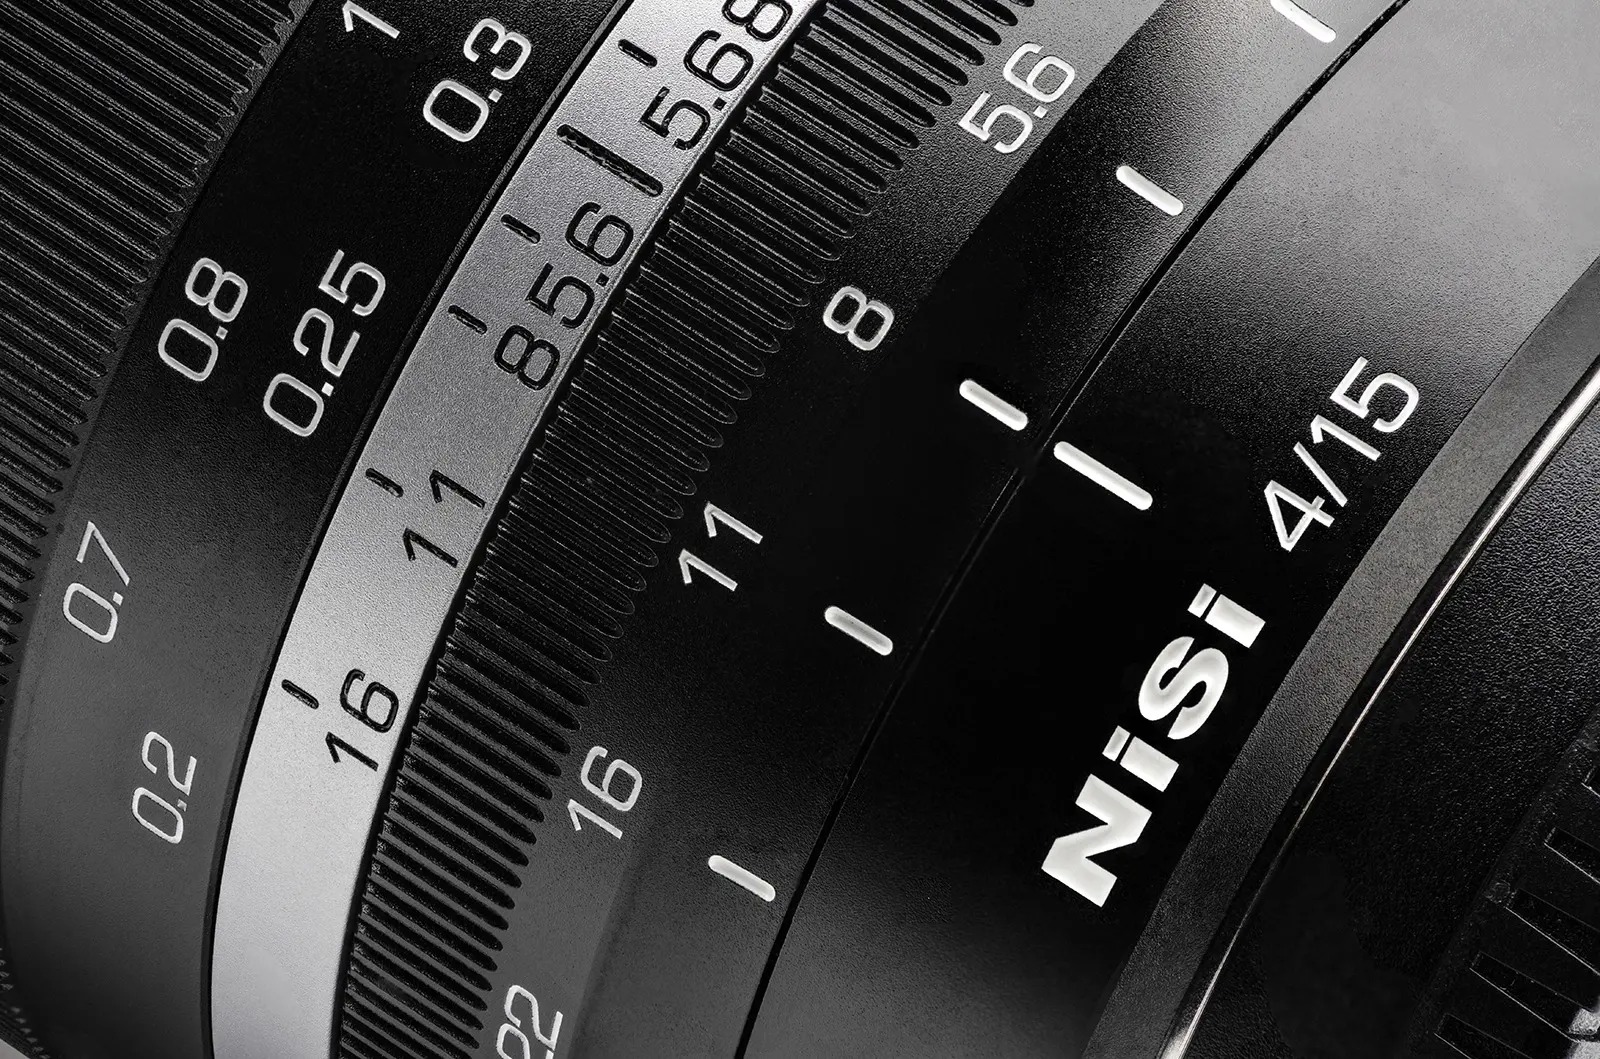 NiSi ra mắt ống kính 15mm F4 cho Sony E và Fujifilm X